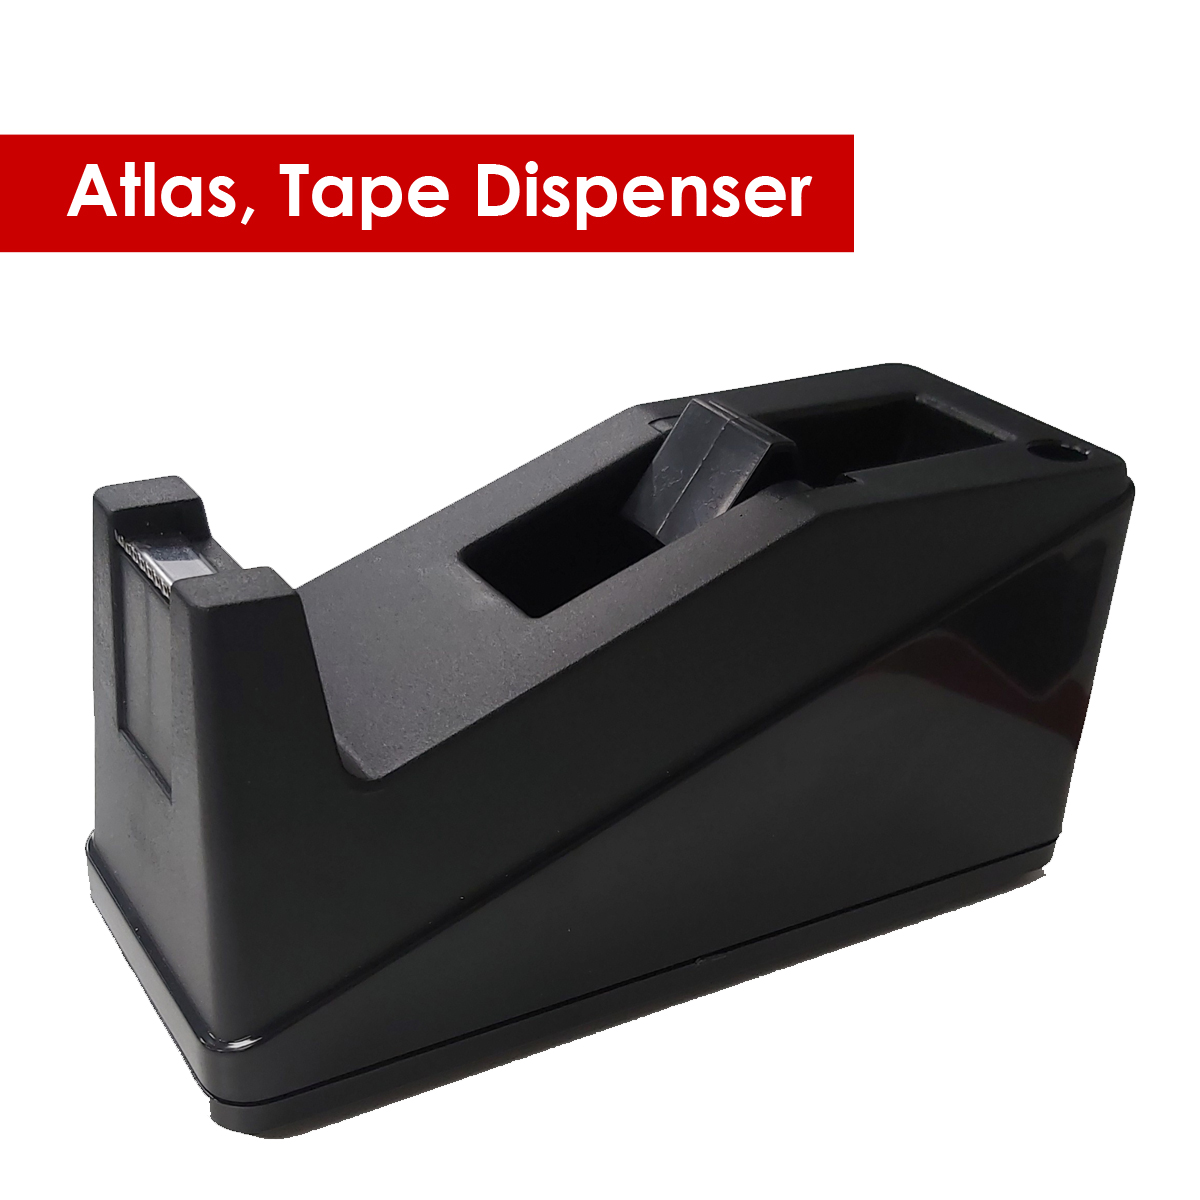 Dispenser Atlas/BK (55272)